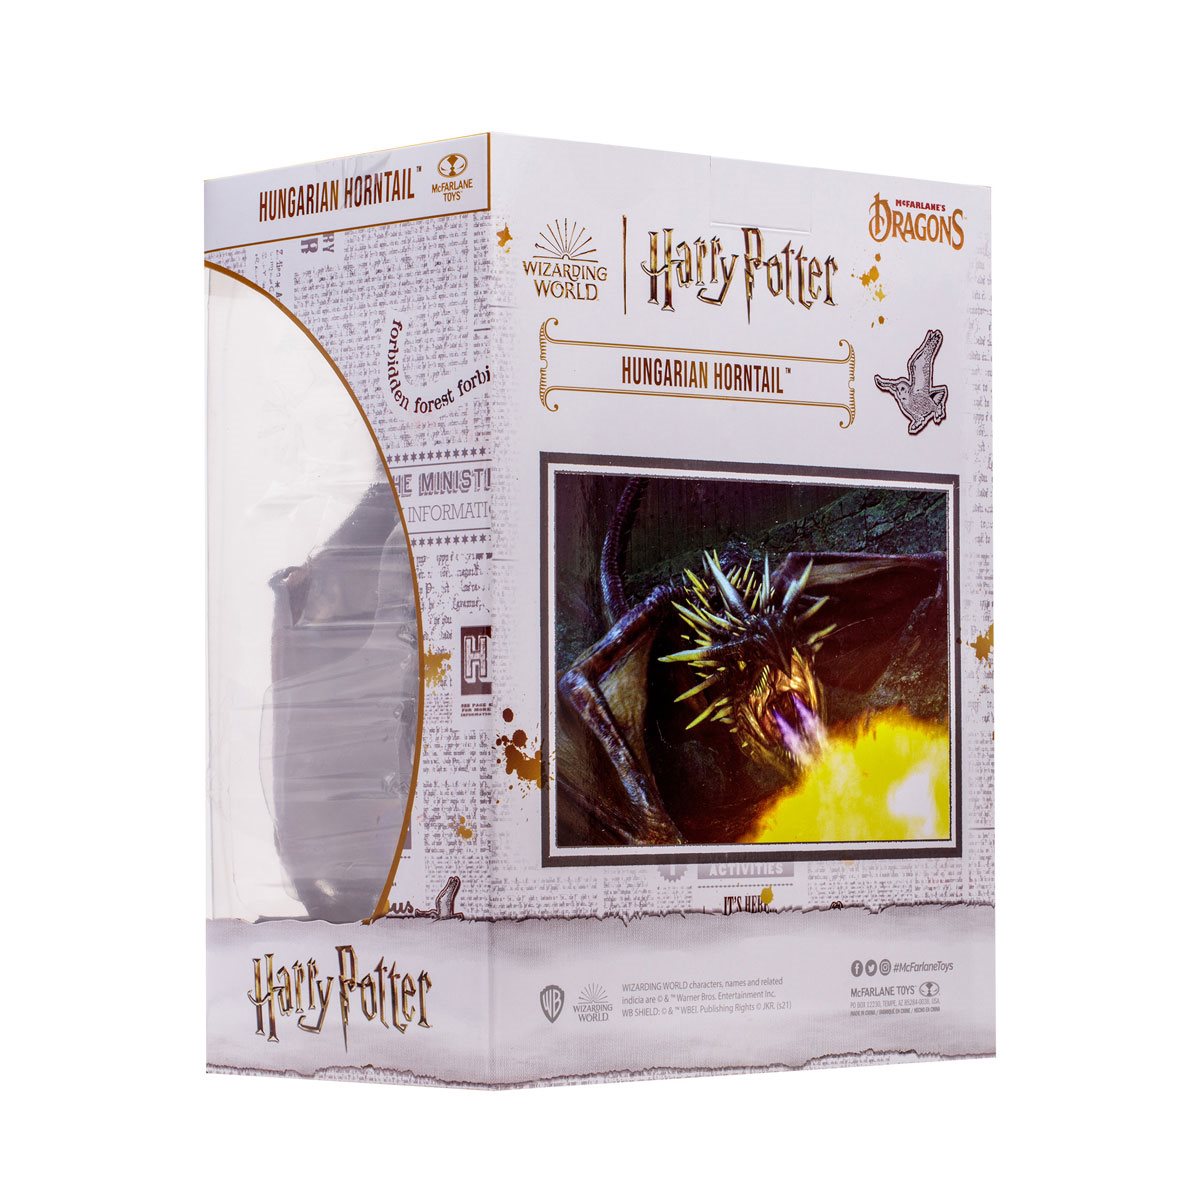 McFarlane Dragons: Harry Potter y El Caliz De Fuego - Colacuerno Hungaro 11 Pulgadas